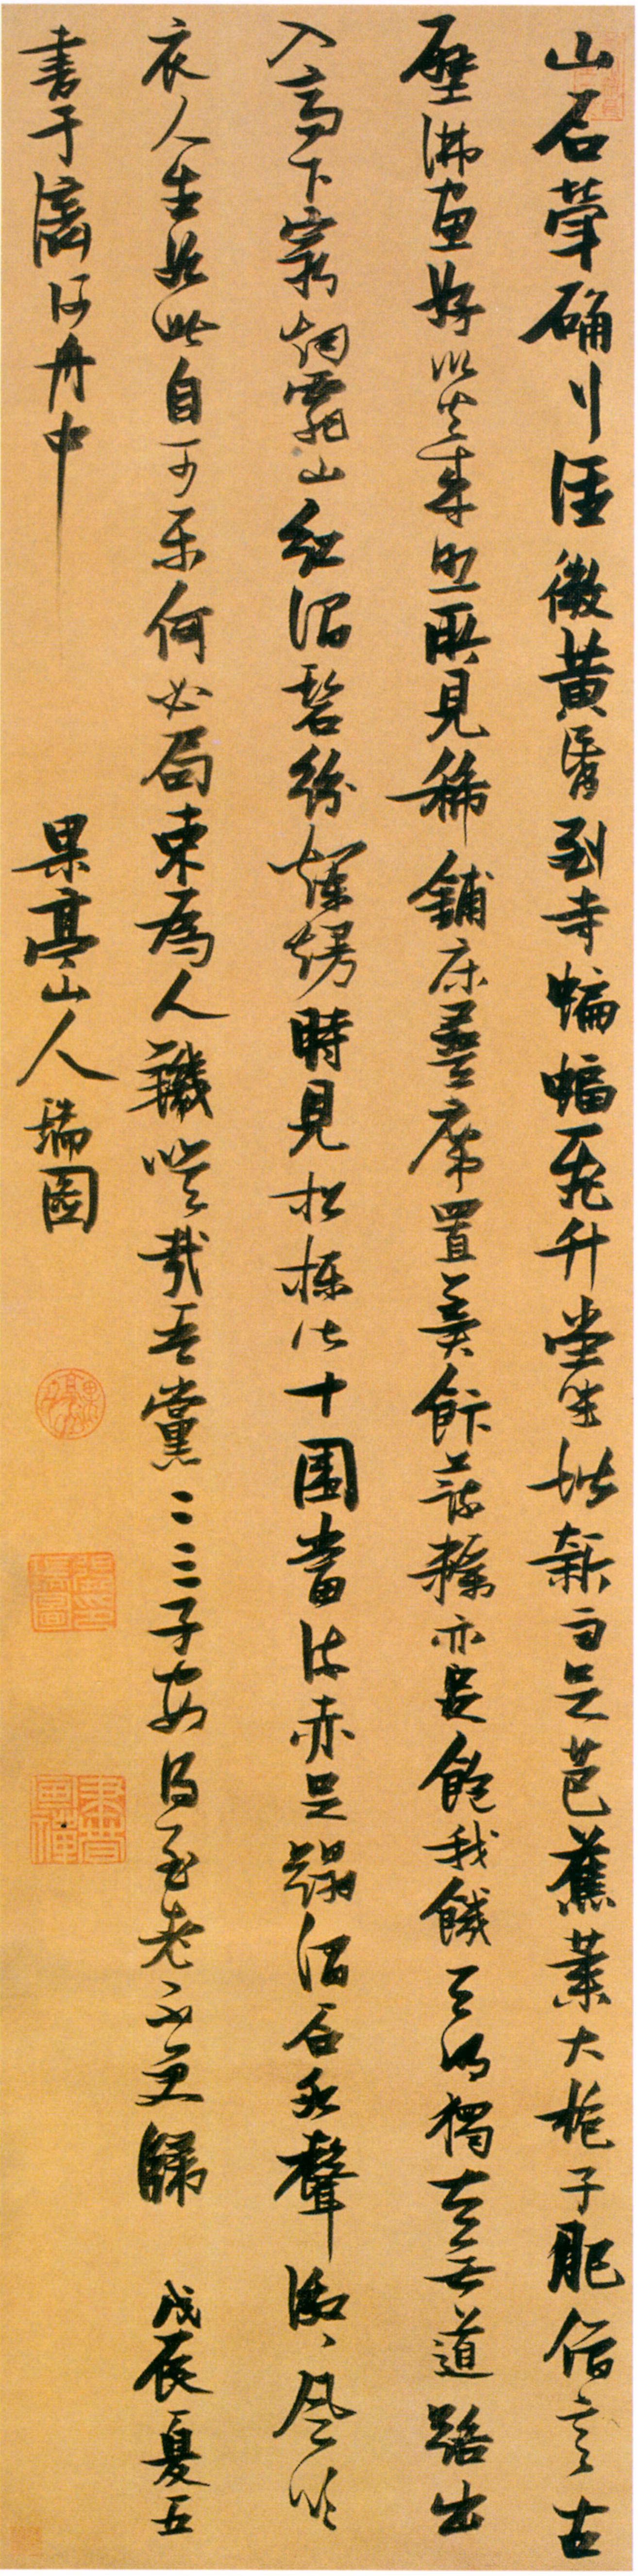 张瑞图《行书韩愈山石诗轴》 -常州市博物馆藏(图1)